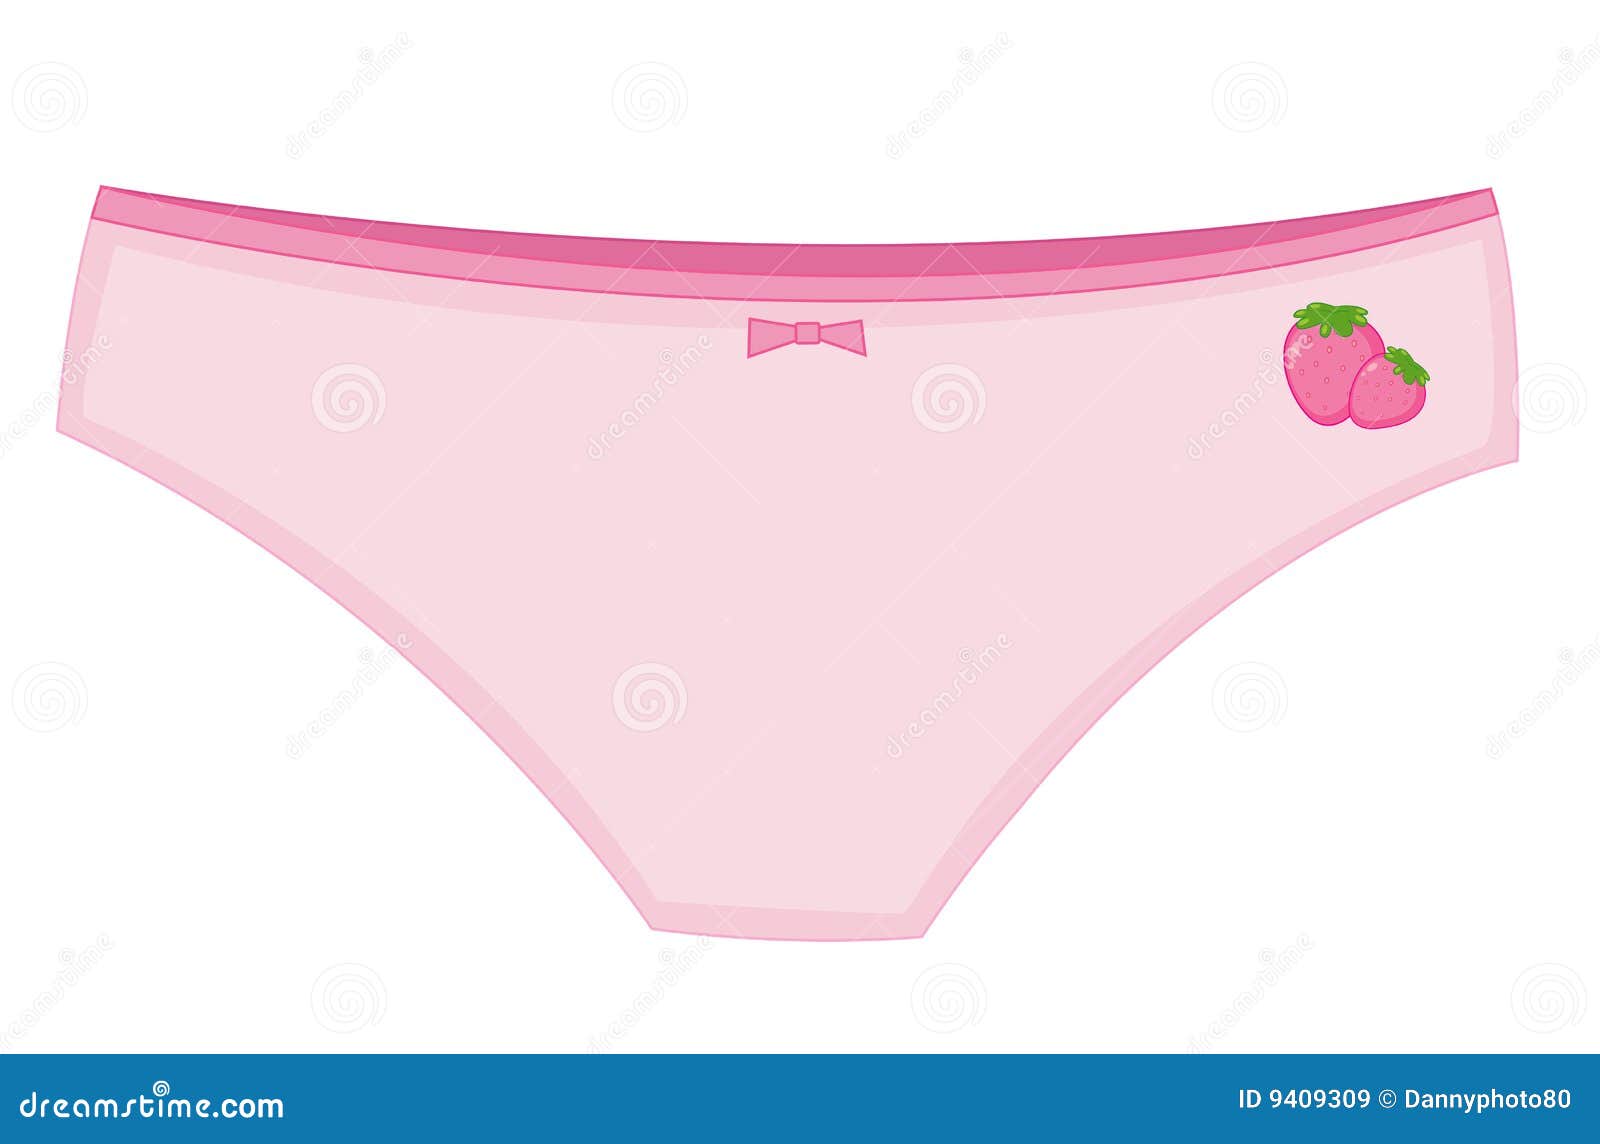 girl underwear clipart - photo #1